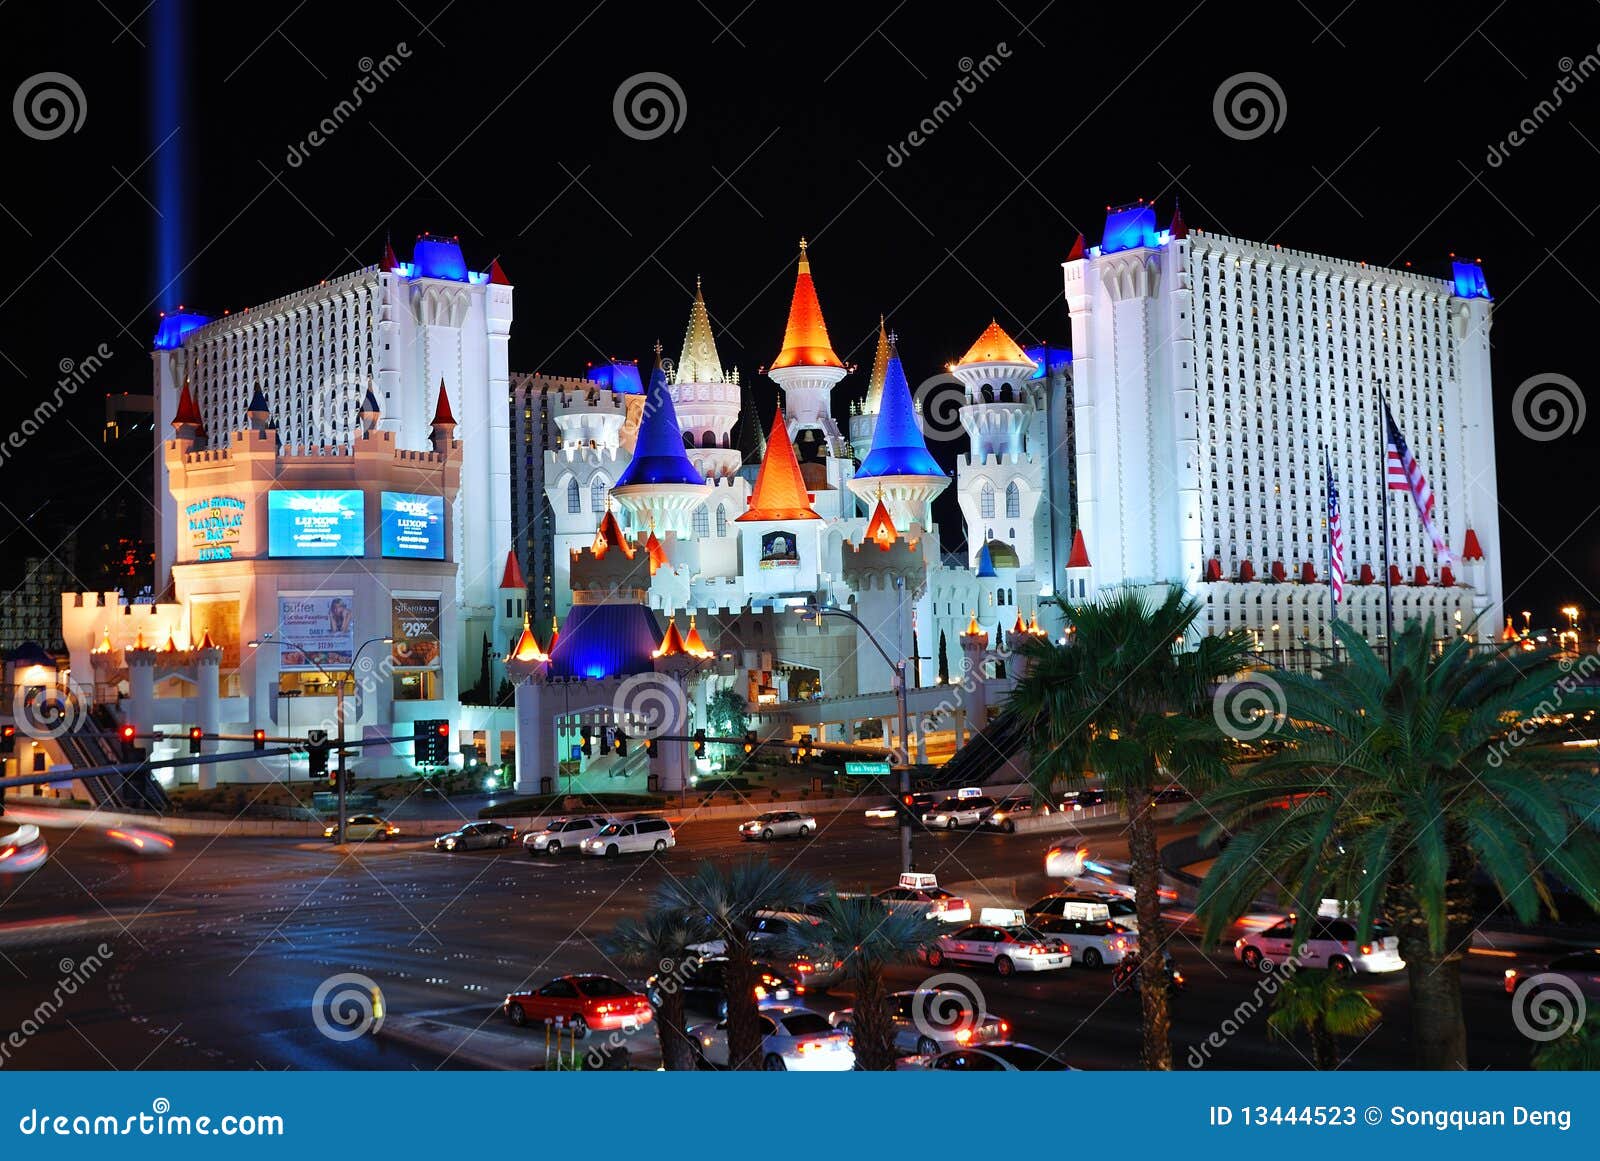 Buy A Casino In Las Vegas